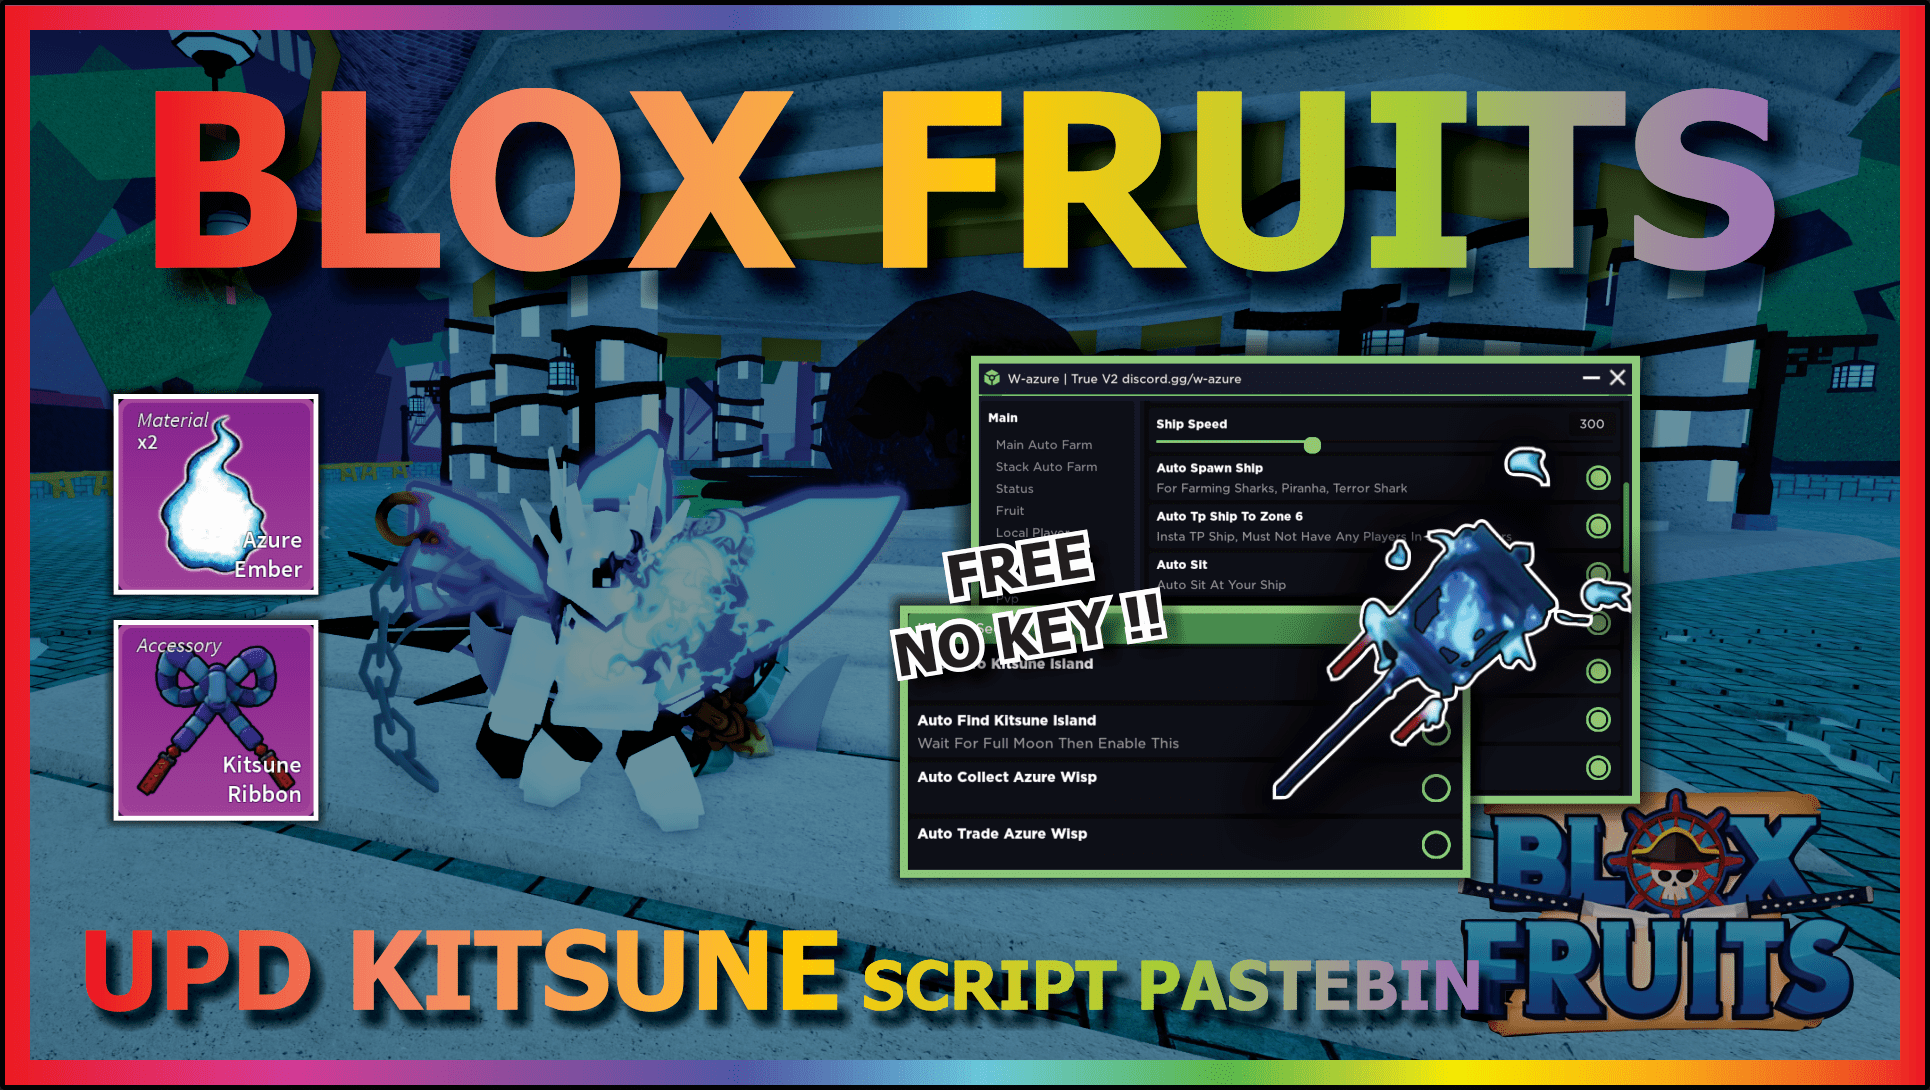 New Blox Fruits Scripts